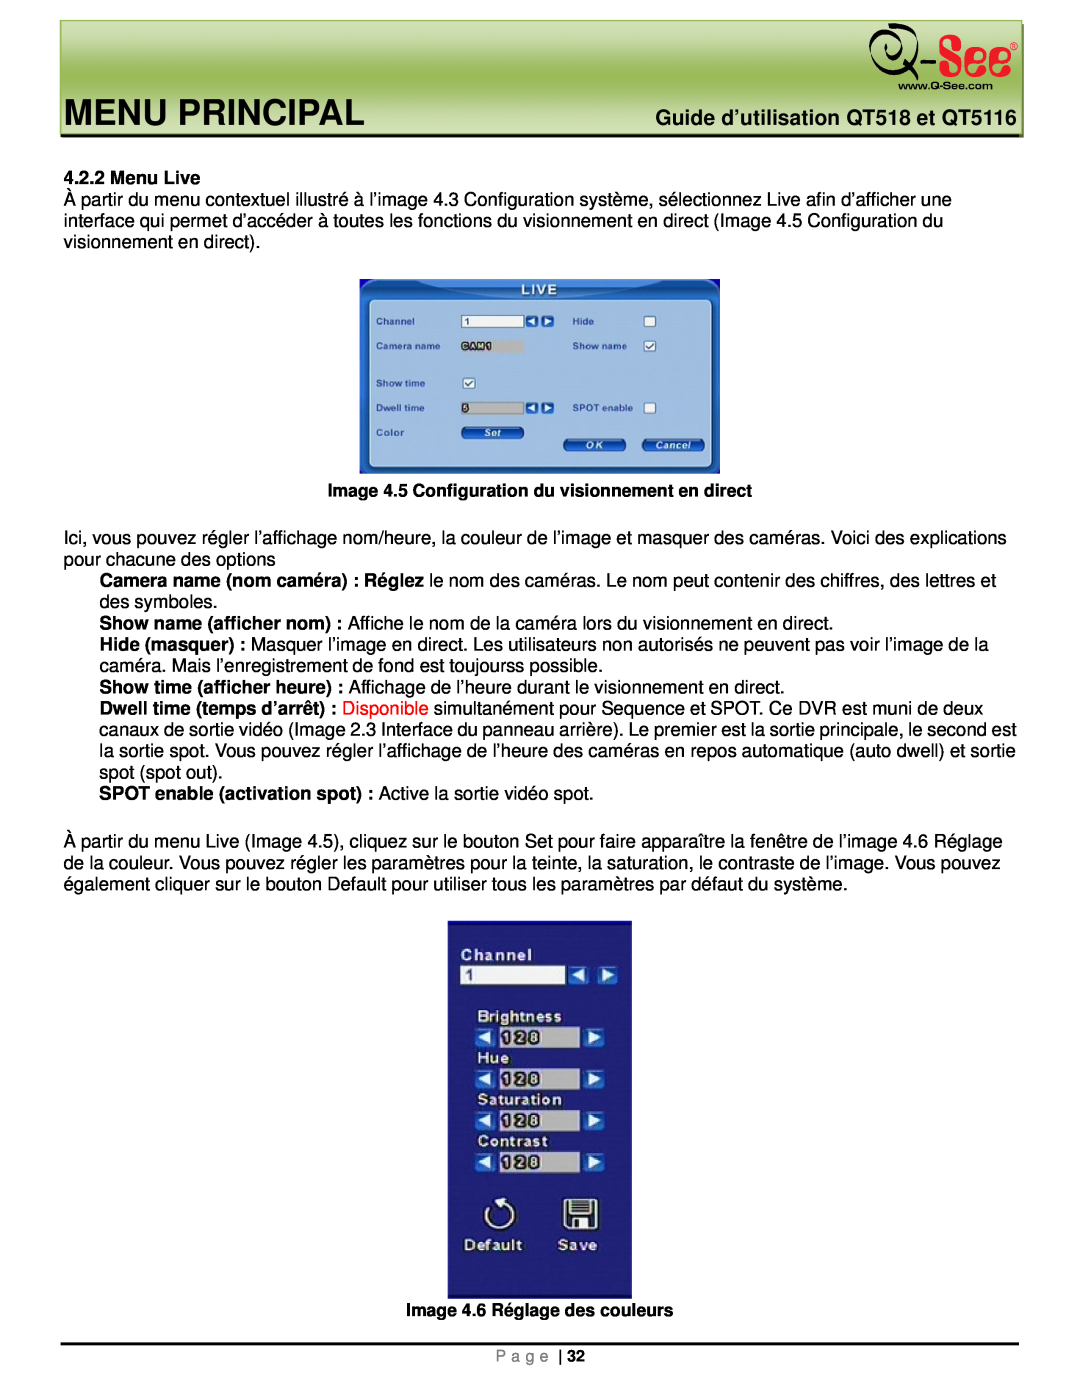 Q-See Menu Principal, Guide d’utilisation QT518 et QT5116, Menu Live, Image 4.5 Configuration du visionnement en direct 